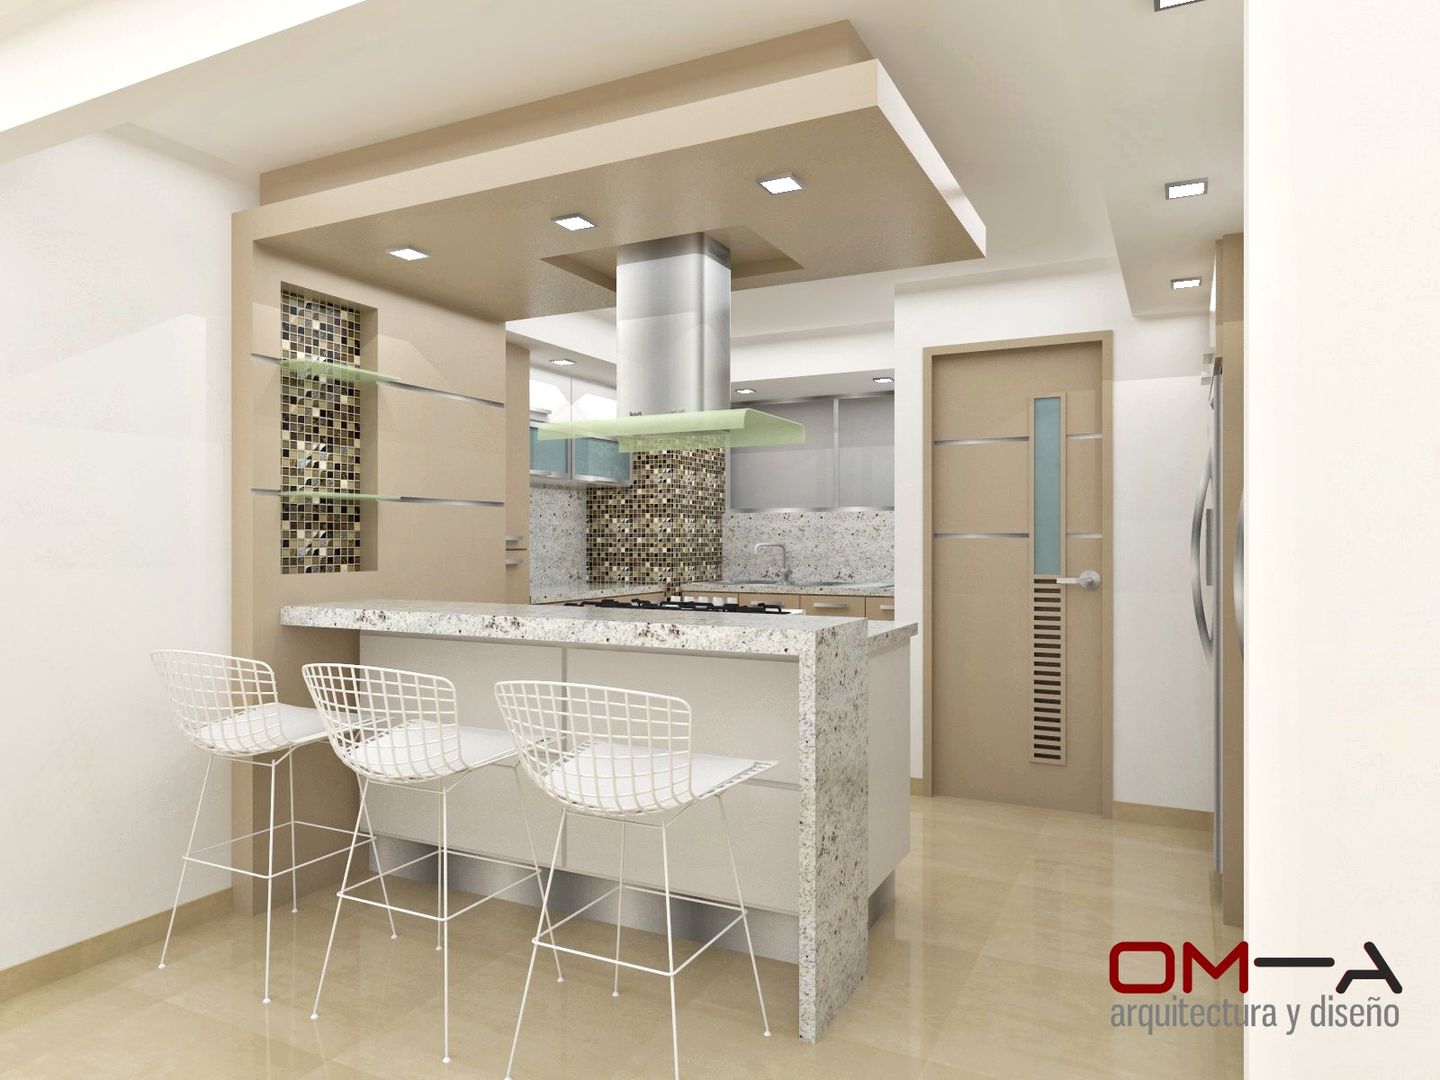 Diseño de cocina, om-a arquitectura y diseño om-a arquitectura y diseño Dapur Minimalis